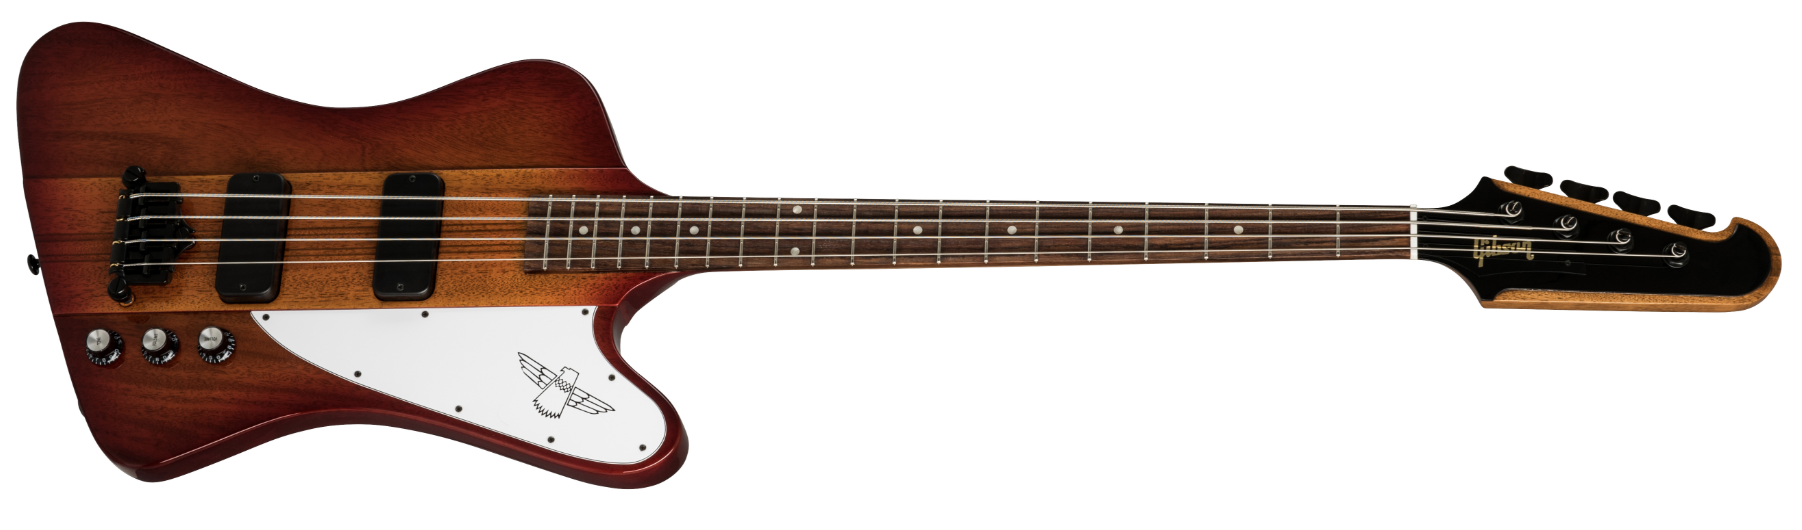 Gibson USA 2019 Thunderbird Bass, Heritage Cherry Sunburst